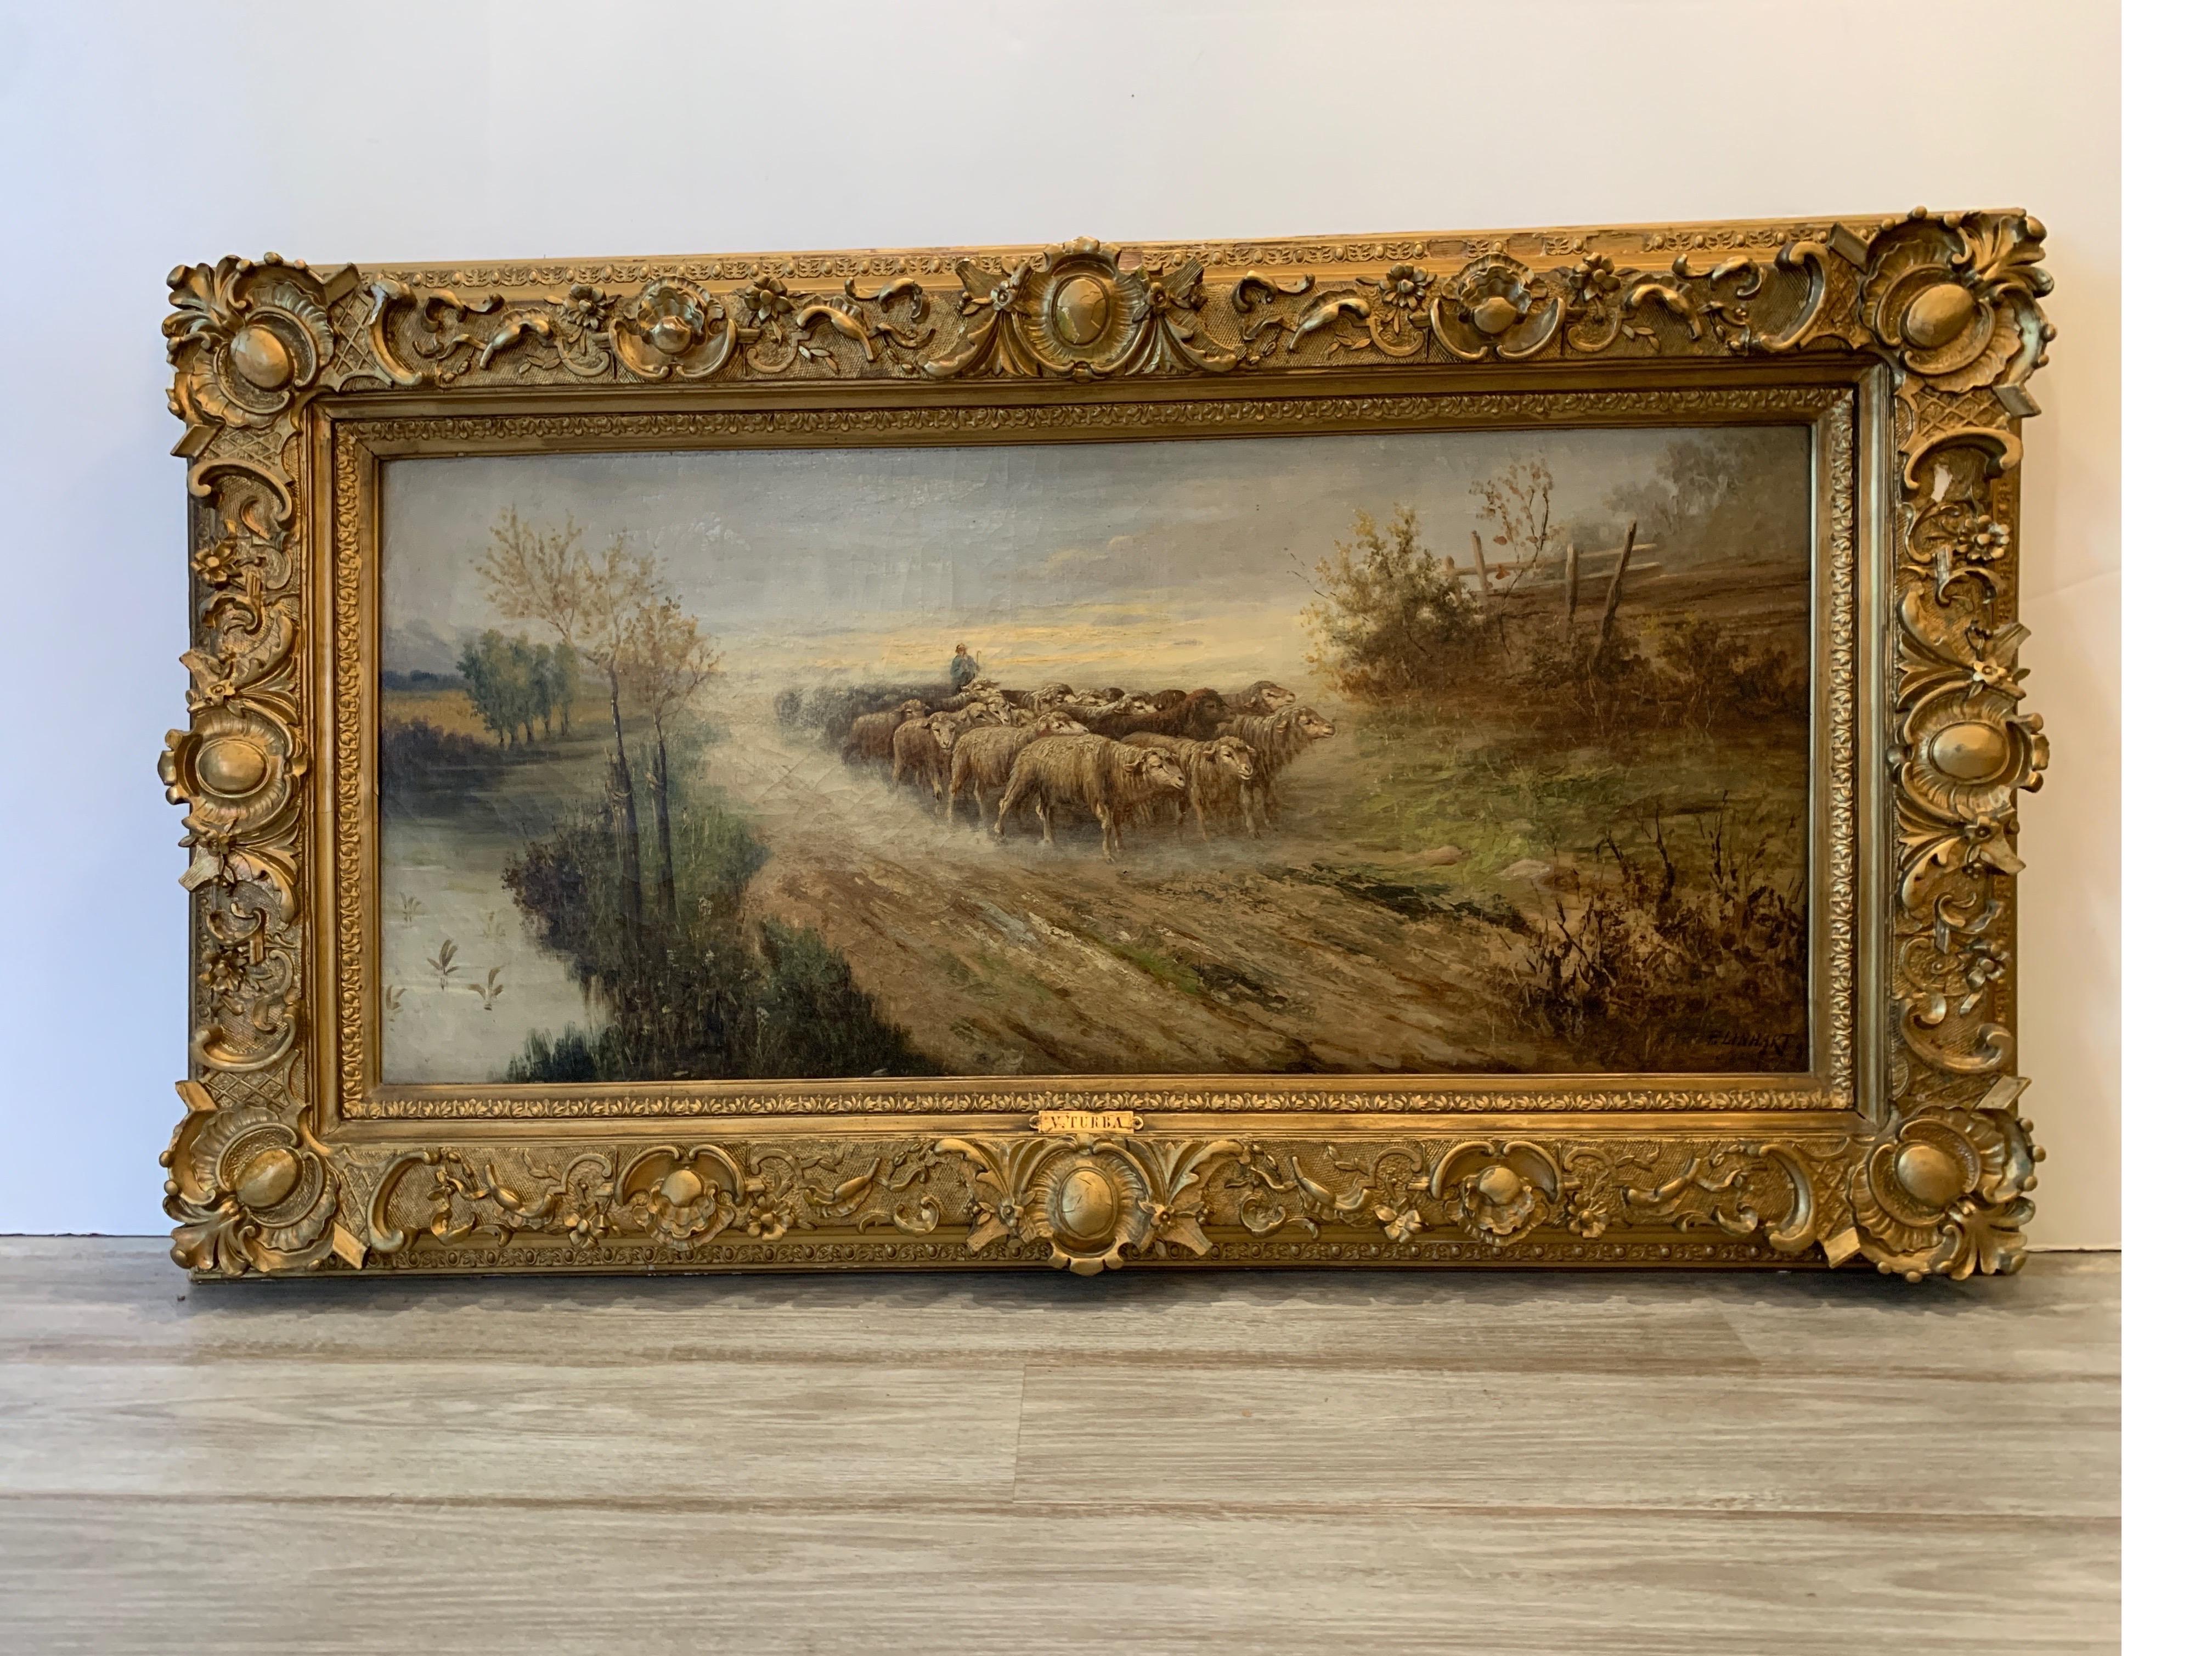 huile sur toile européenne originale du 19ème siècle représentant des moutons sur un chemin, signée par Linhart
Jolie peinture de moutons guidés sur un chemin de campagne, idéale pour une maison de campagne ou de ferme.
Dimensions : 3.25